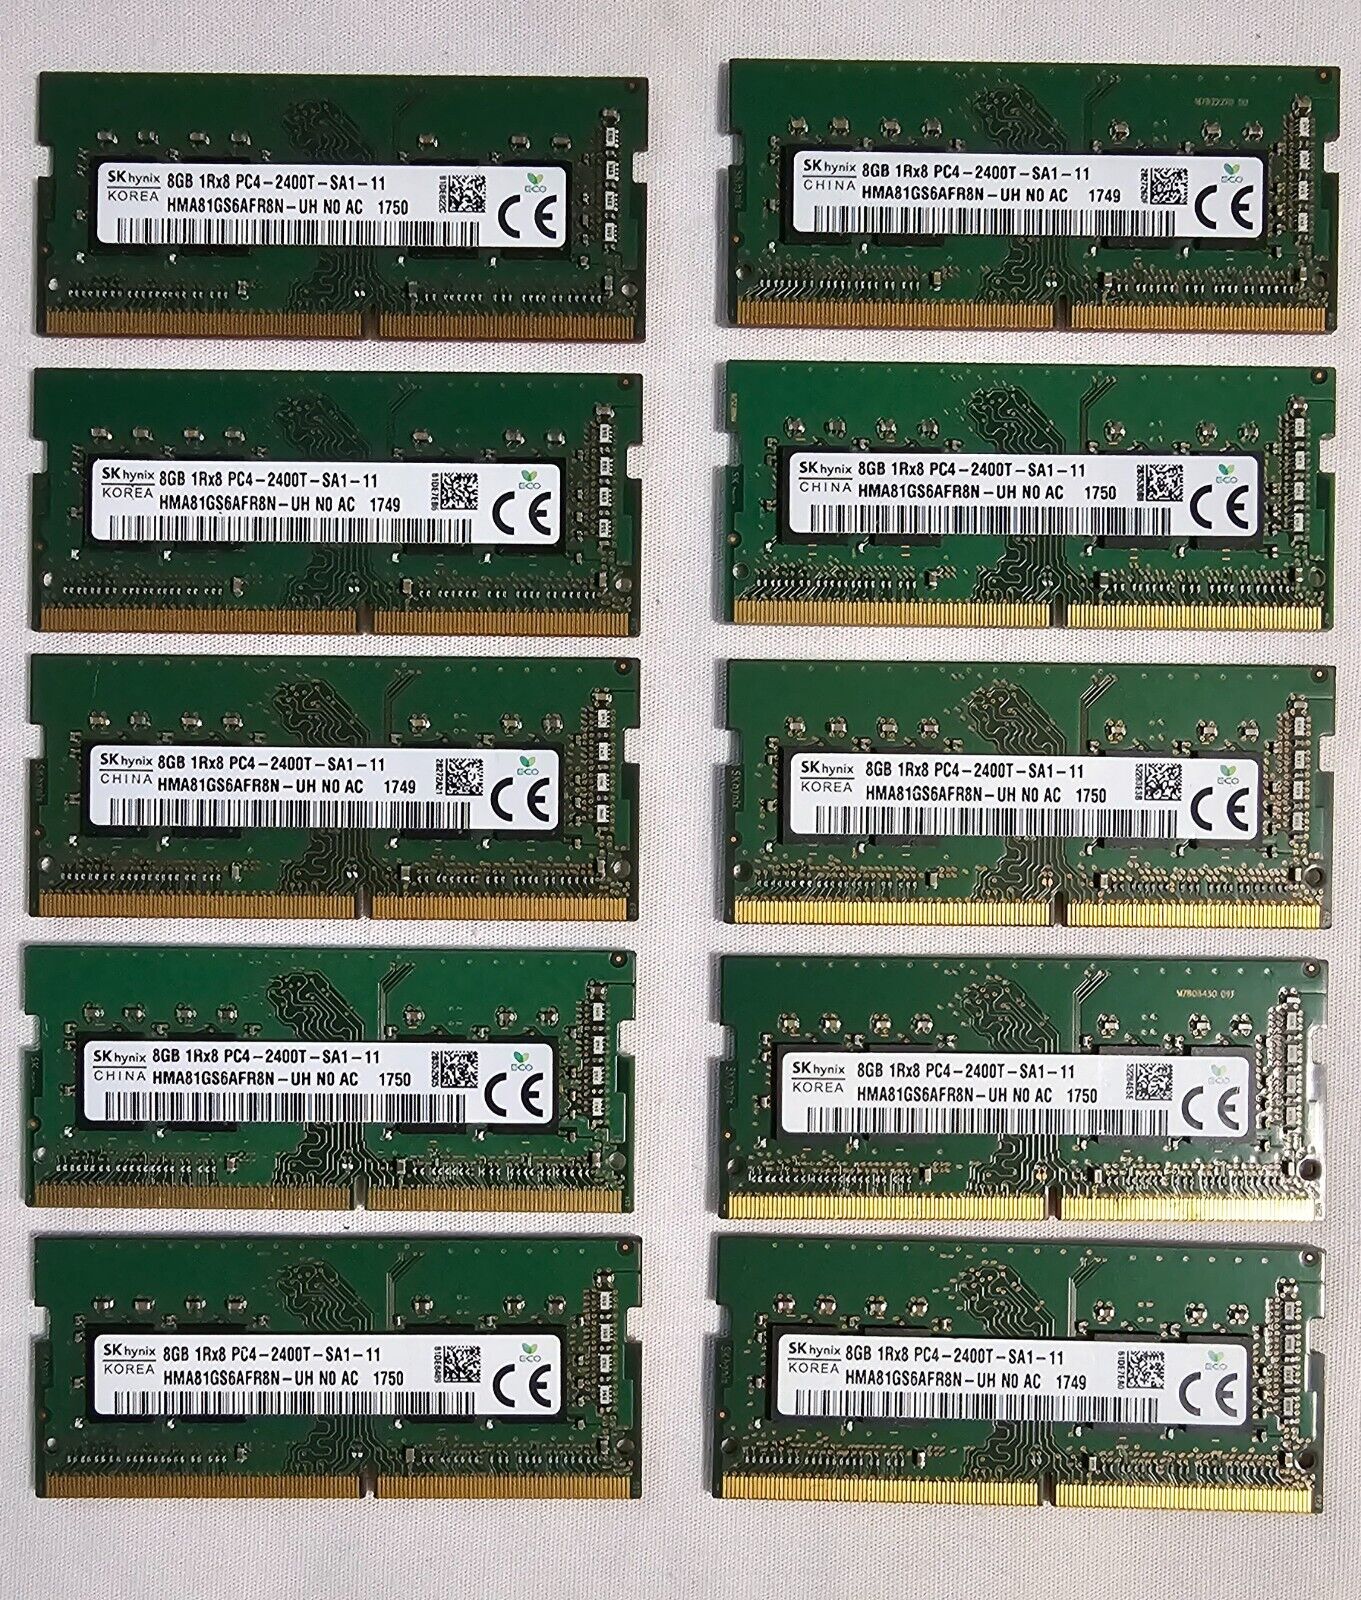 Bundle of Ten (10x) SK Hynix 8GB 1Rx8 PC4-2400T-SA1-11 - DDR4 SODIMM Memory RAM